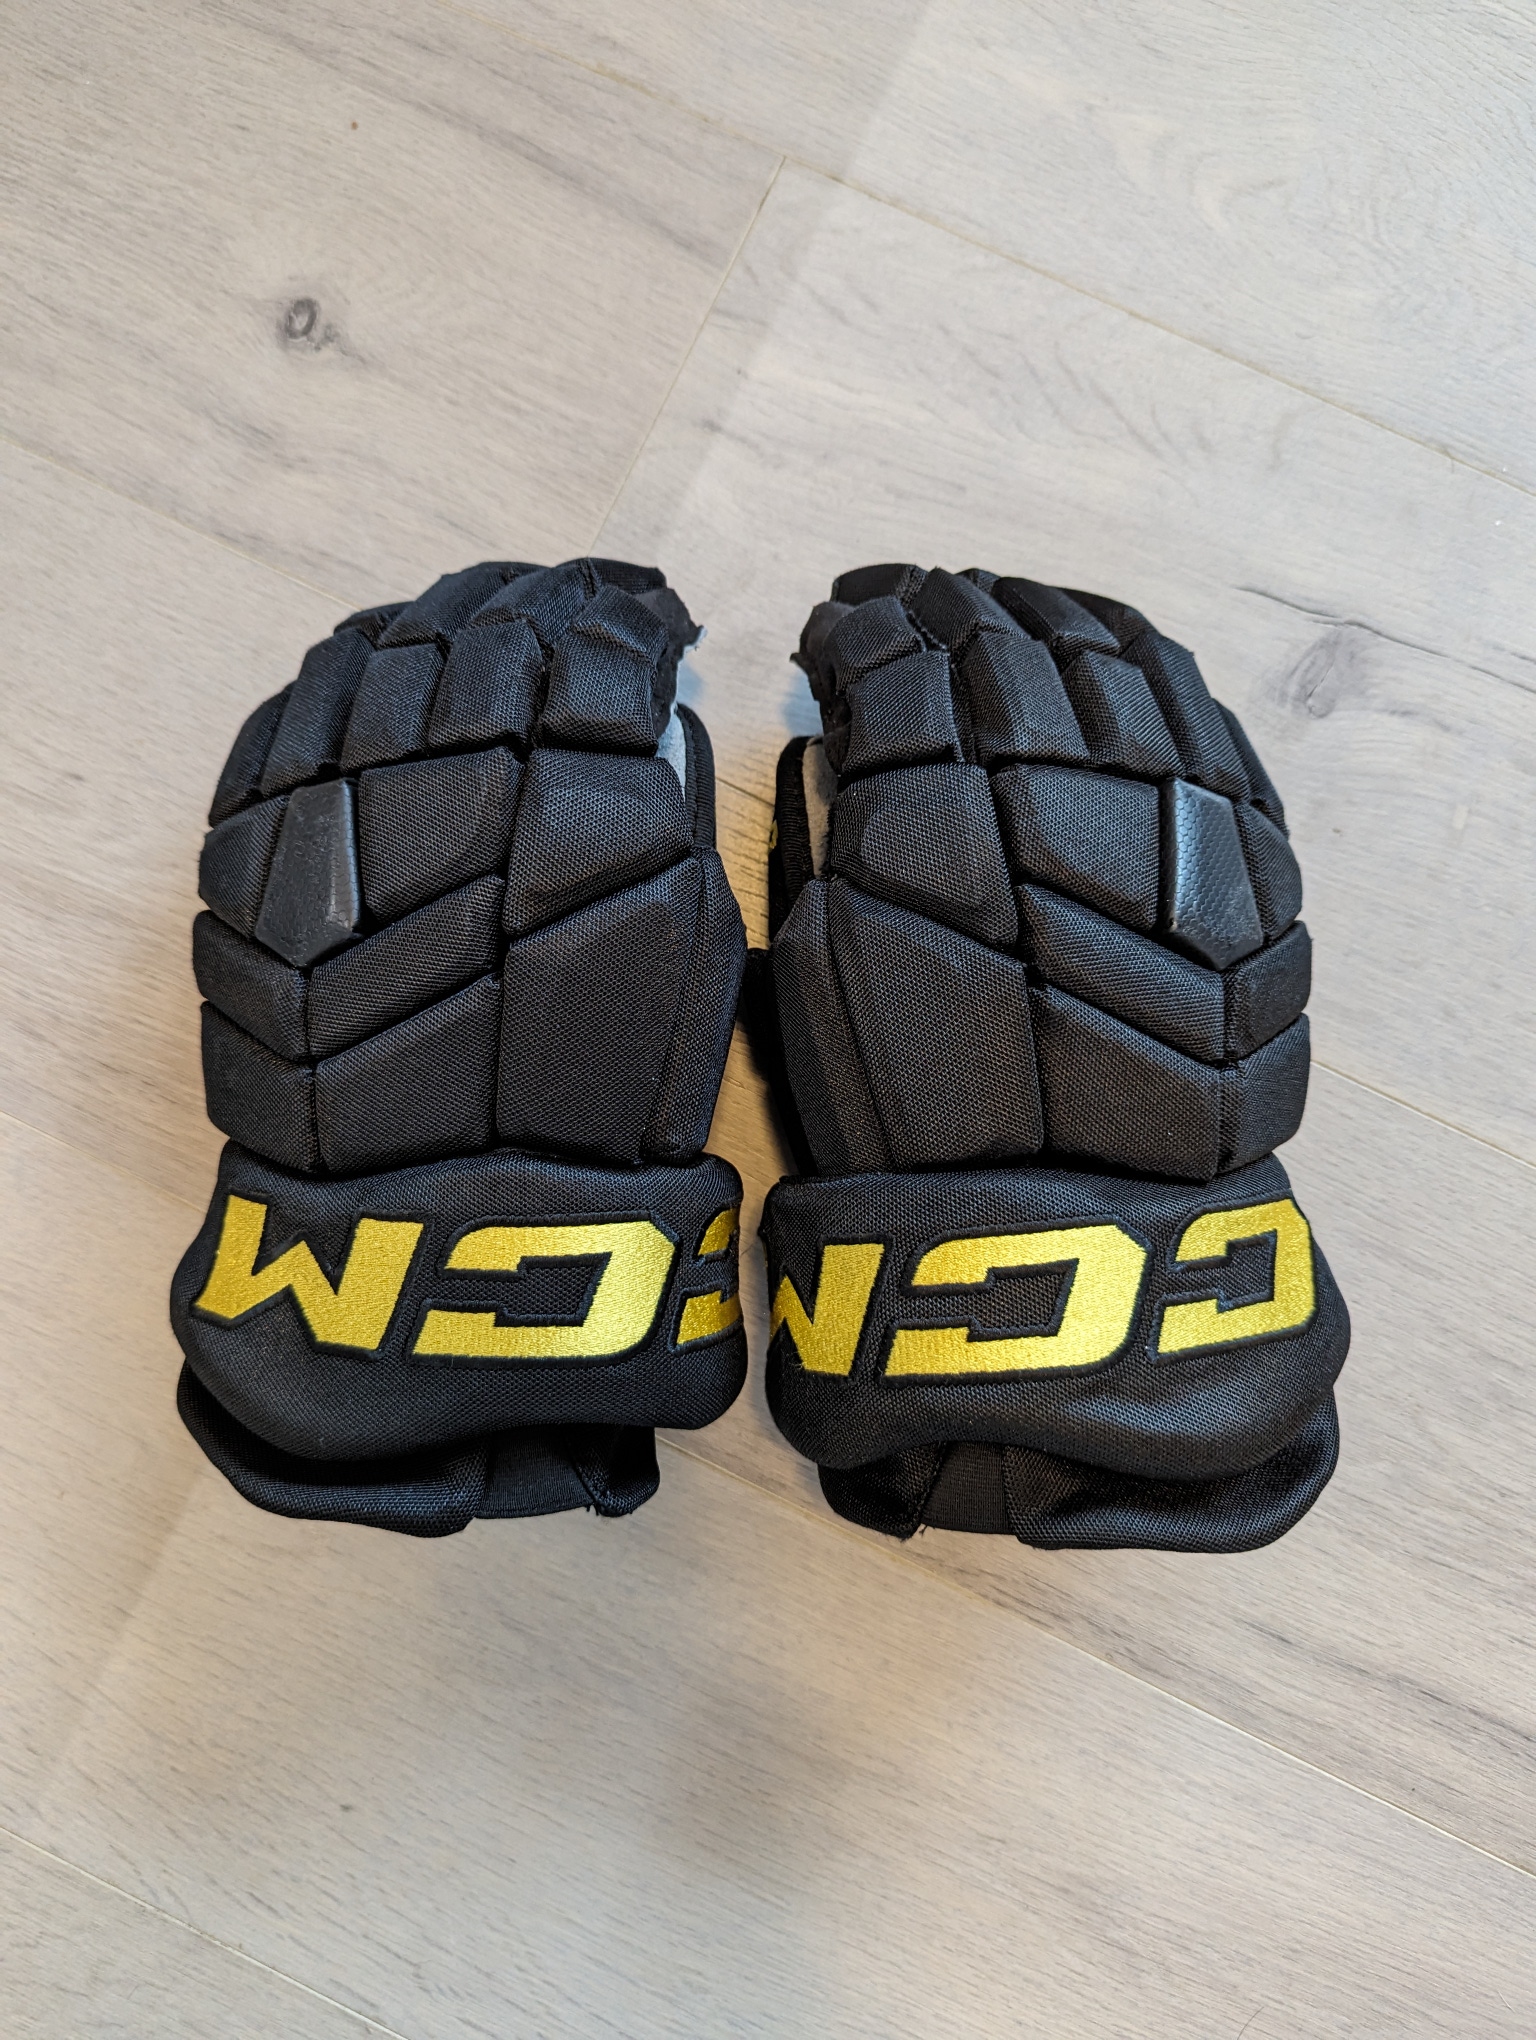 Vancouver Canucks Skate Gloves - Andre Kuzmenko - Used CCM HGTK Gloves 14" Pro Stock